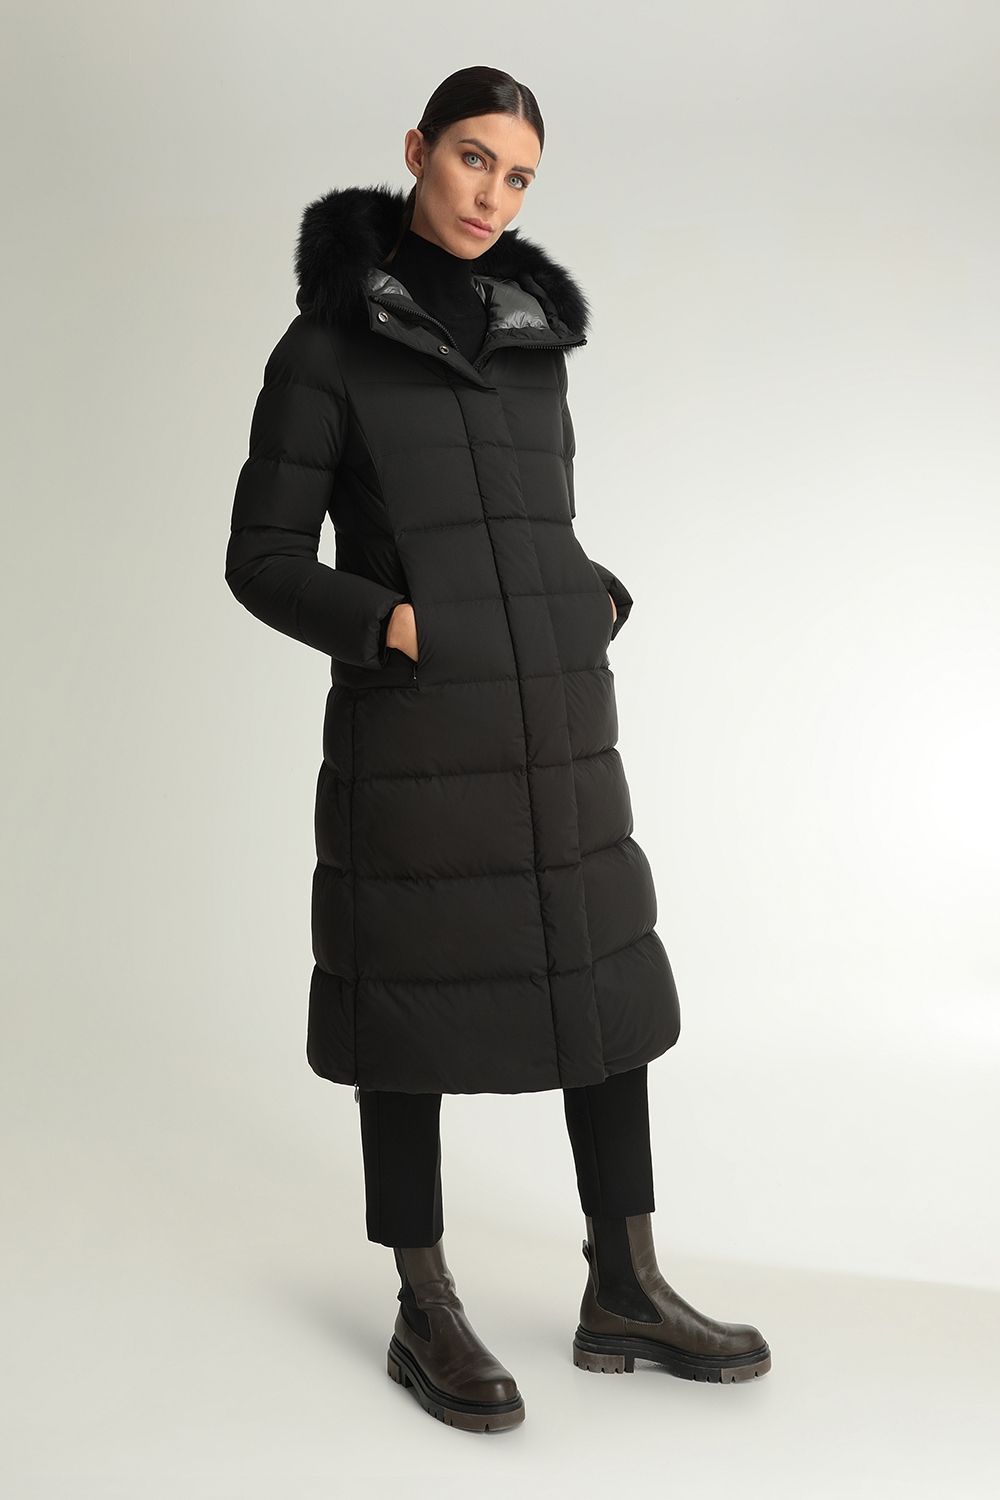 Women's coats Hetregó  Winter Collection 2020-21